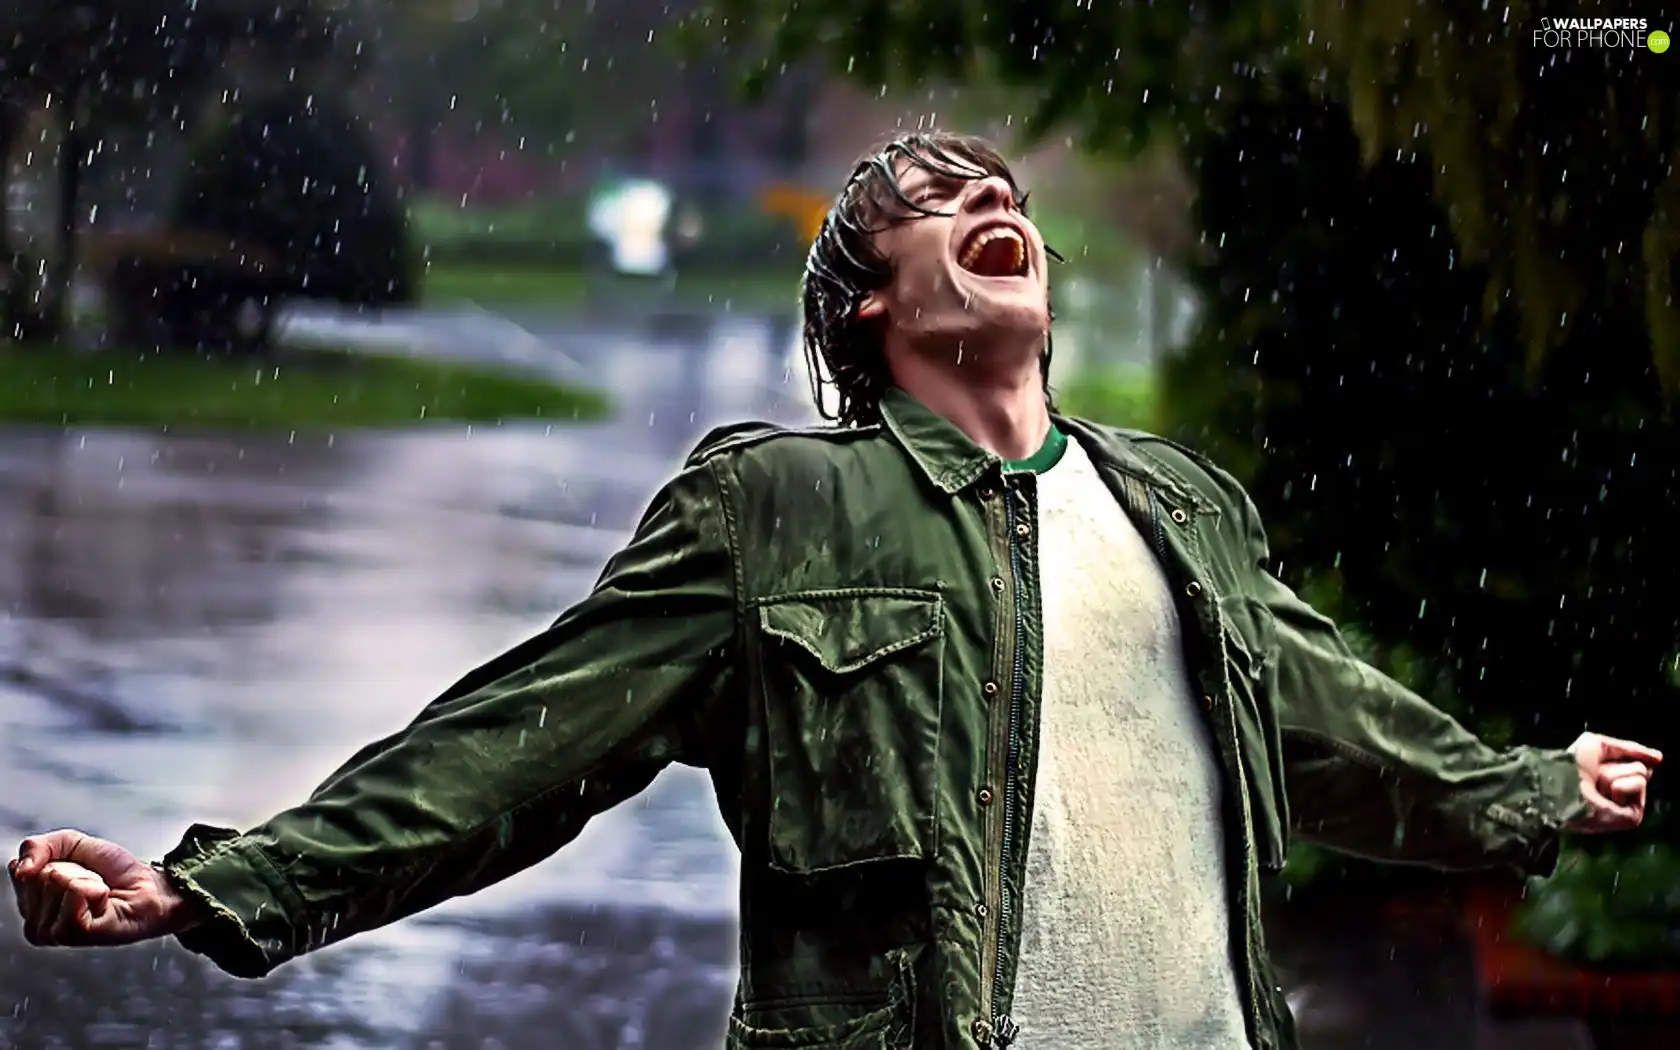 Rain, a man, Emotions